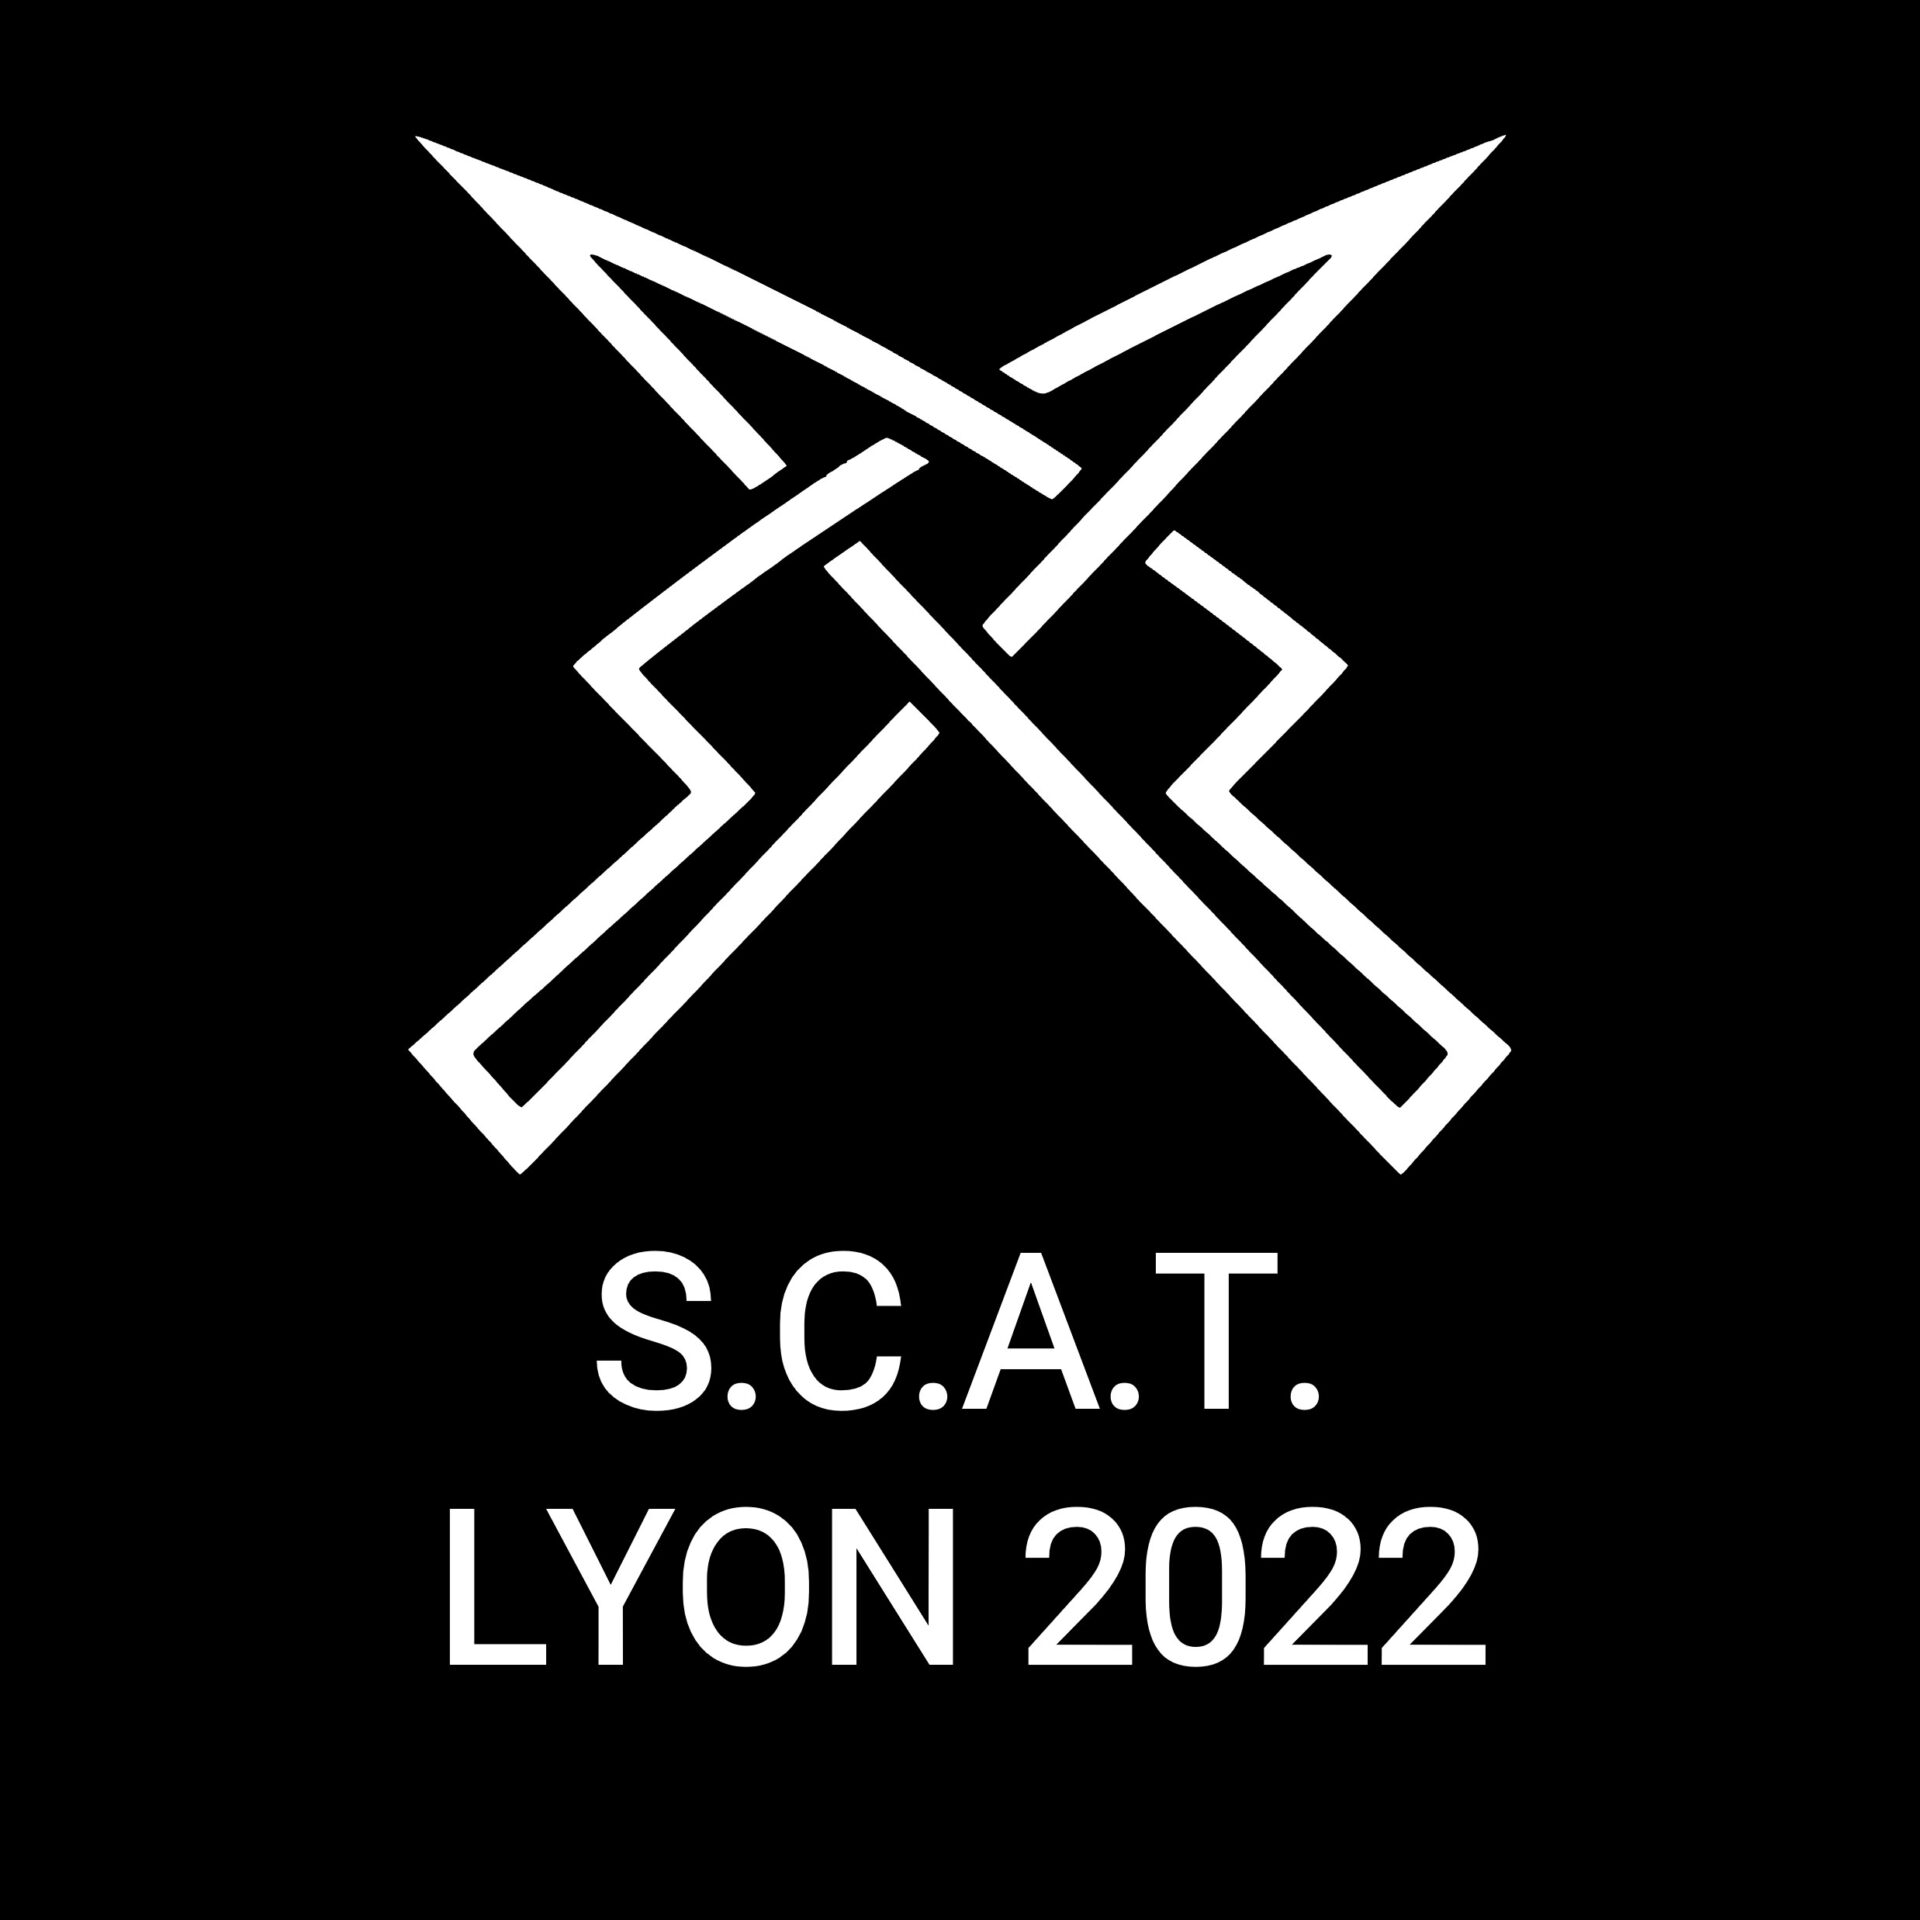 SCAT Lyon 2022